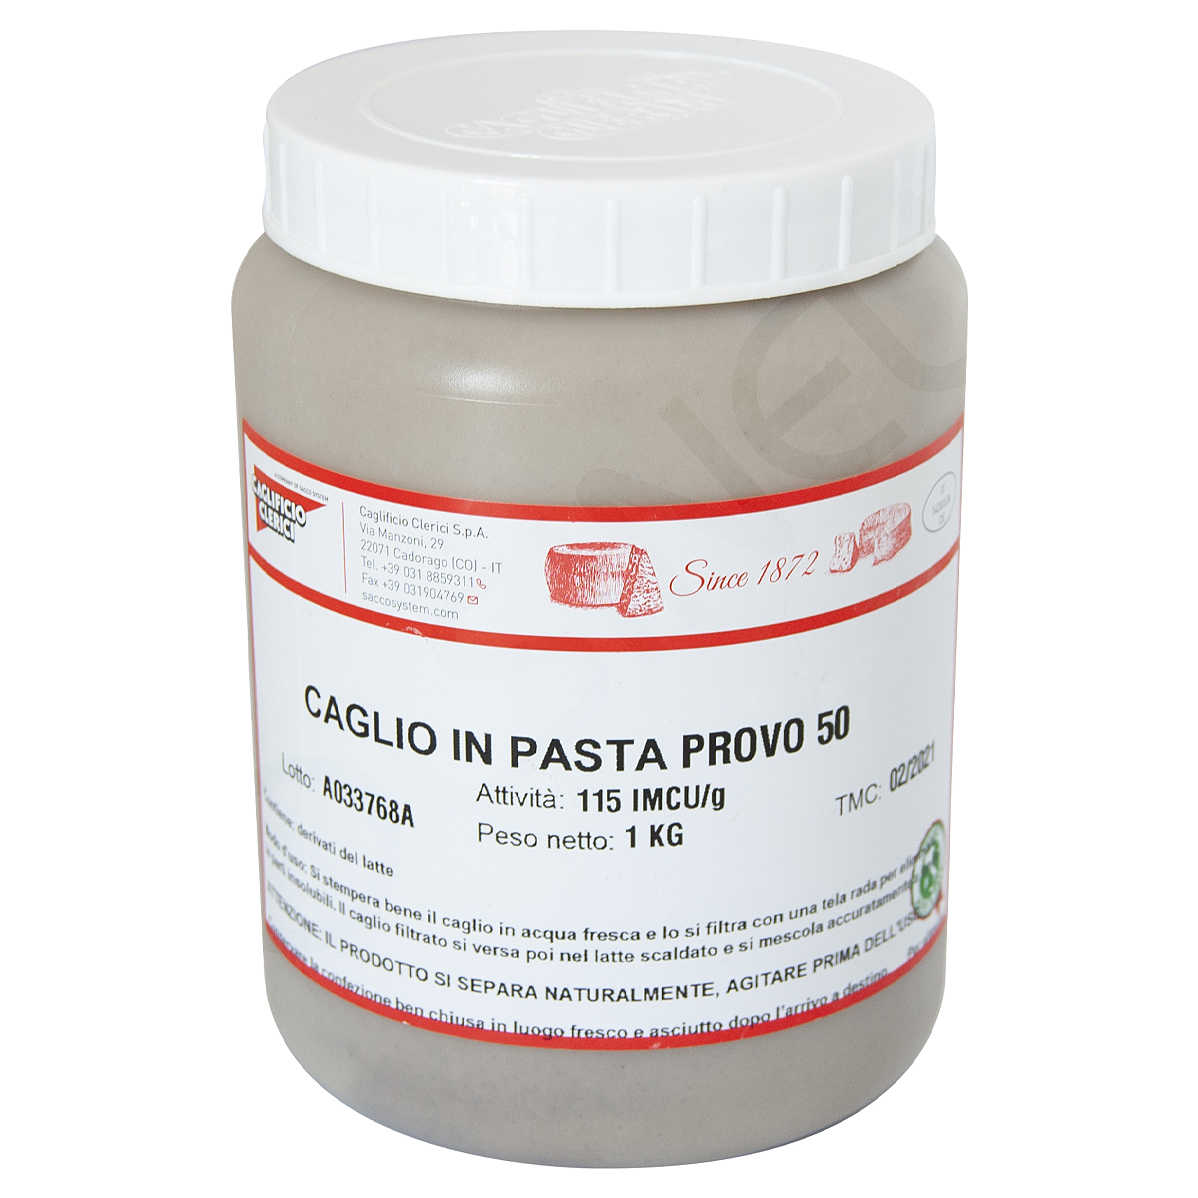 https://data.polsinelli.it/imgprodotto/caglio-in-pasta-solubile-provo-50-imcu-115-1-kg_5953_zoom.jpg